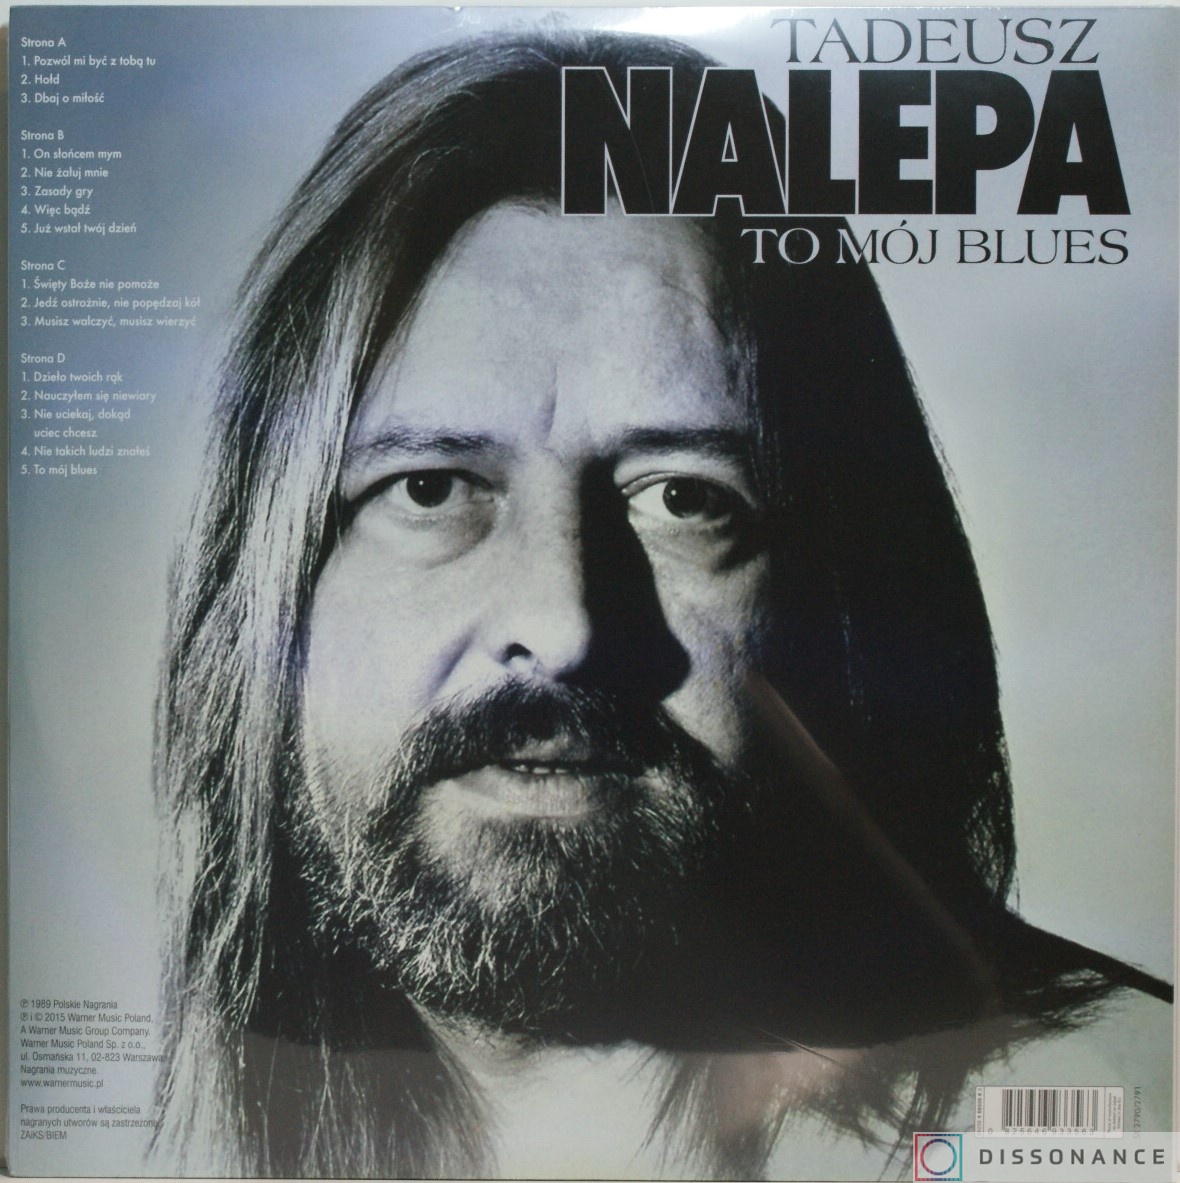 Виниловая пластинка Tadeusz Nalepa - To Moj Blues (1989) - фото 1